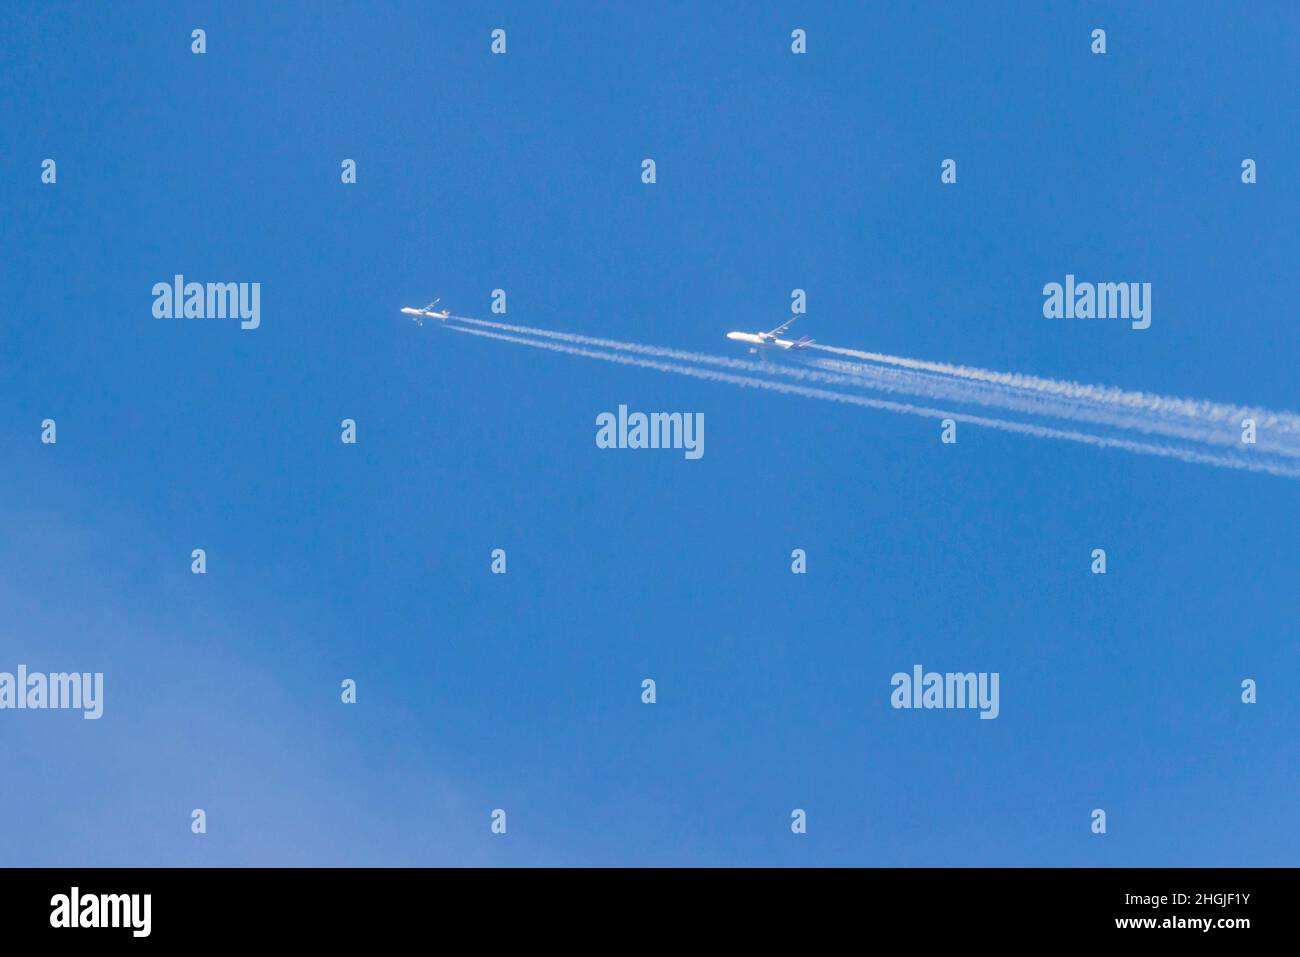 Blauer, wolkenloser Himmel. Vor dem Hintergrund fliegen zwei hoch fliegende Düsenflugzeuge, hinter denen sich ein weißer Streifen kondensierter Wasserdampf befindet. Stockfoto